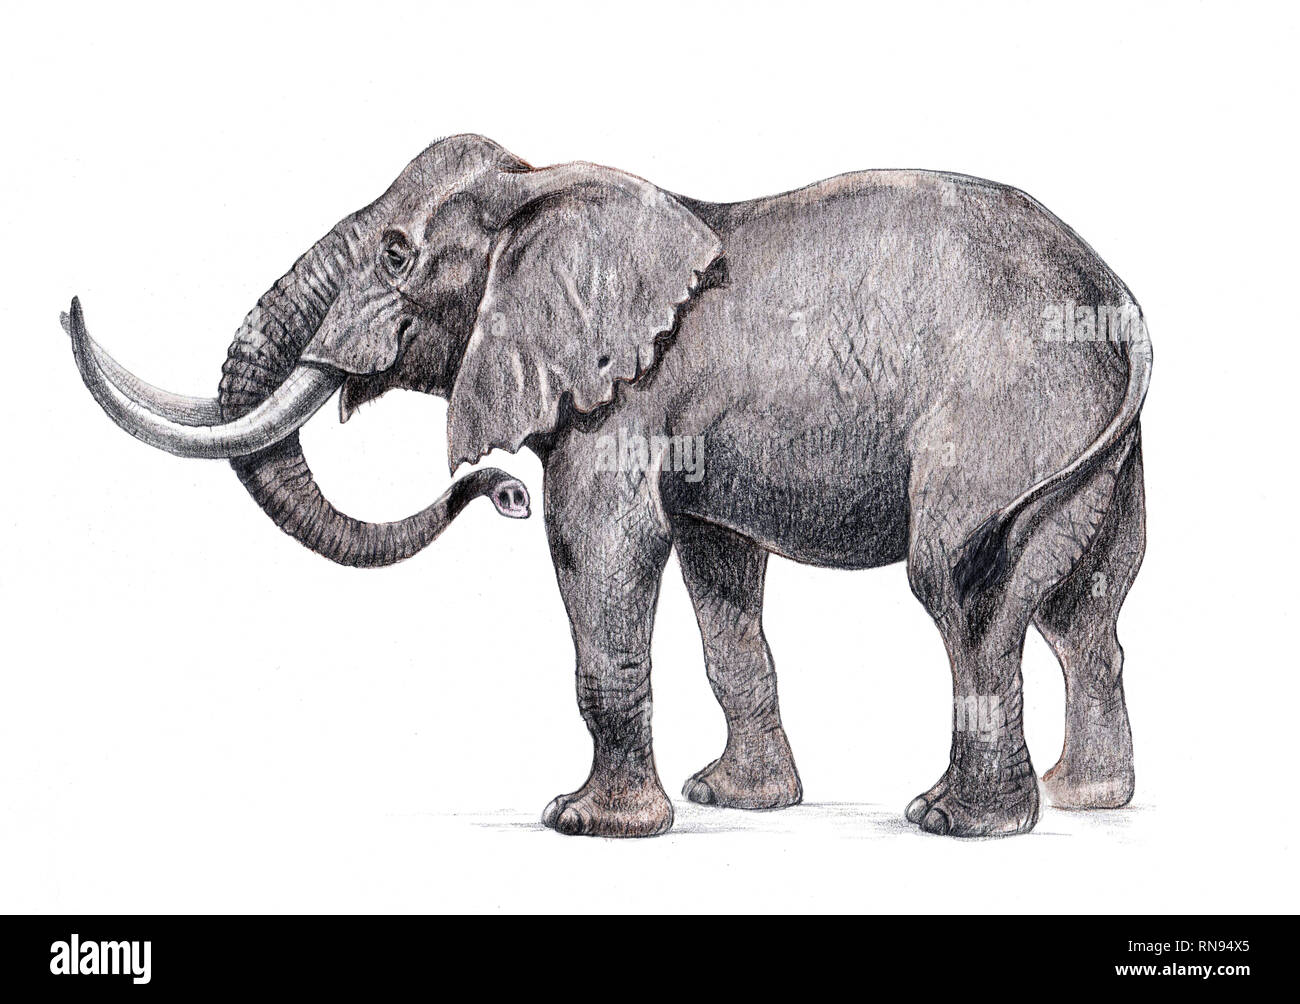 Illustration de l'eléphant d'Afrique. Dessin au crayon à la main. Banque D'Images